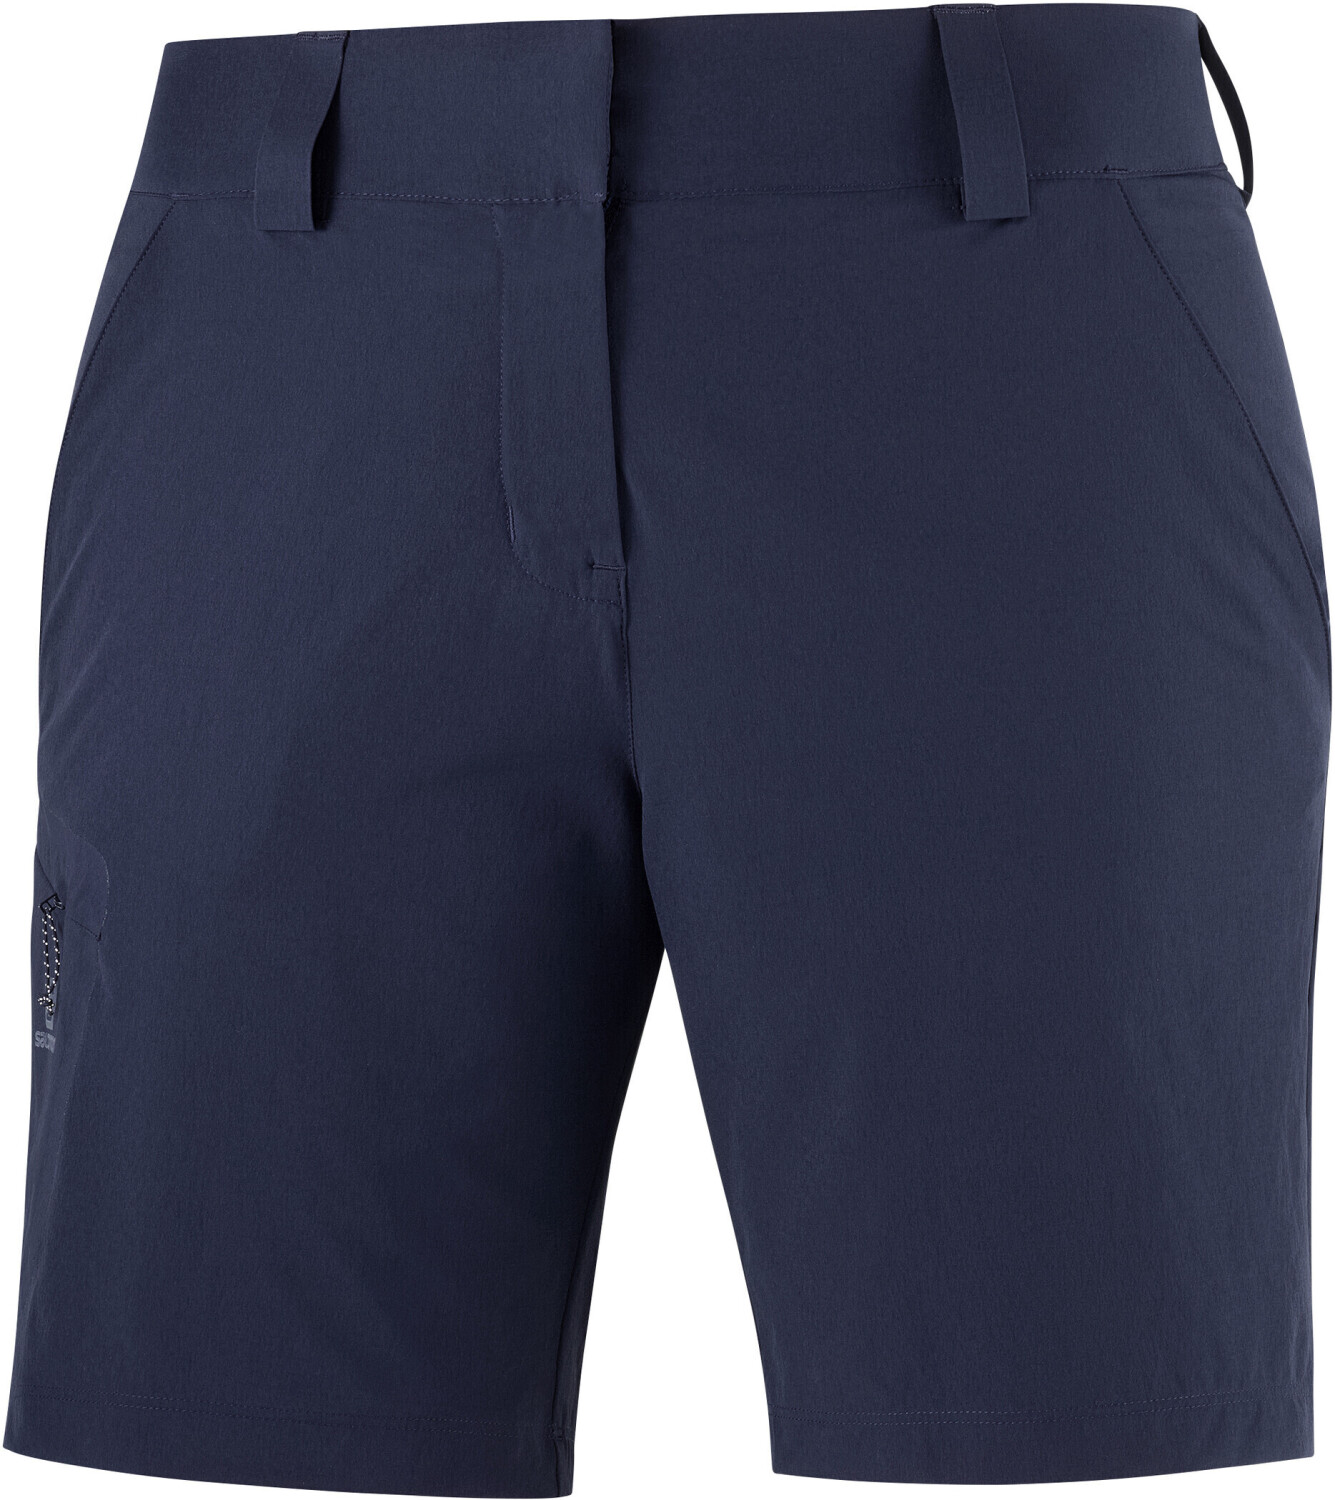 Buy Salomon Wayfarer Shorts Women night sky from £39.49 (Today) – Best ...